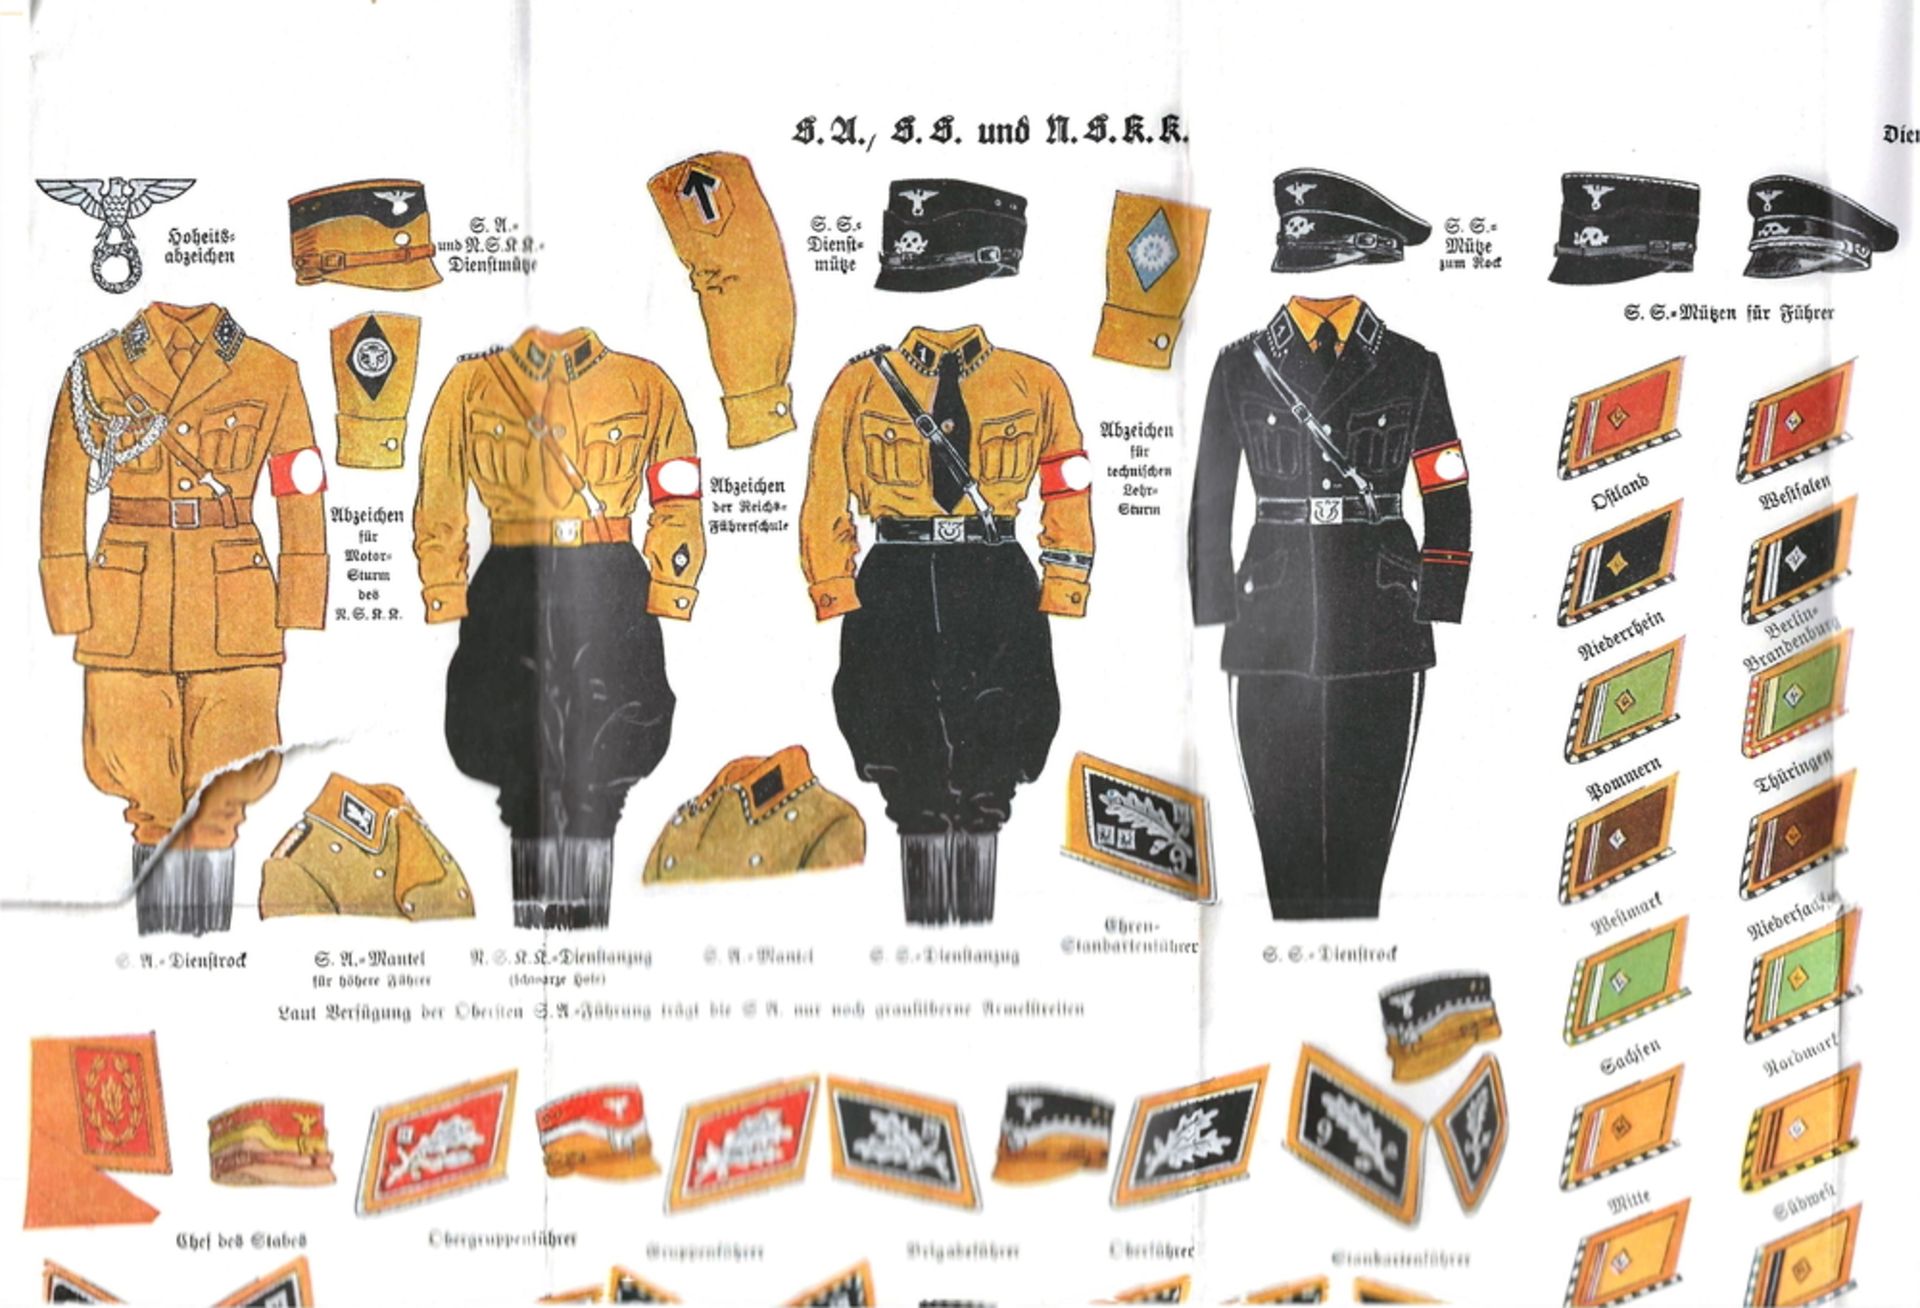 Plakat mit der Abbildung von Uniformen der S.U., S.S., N.S.k.k., sowie doe Dienstrang-Abzeichen